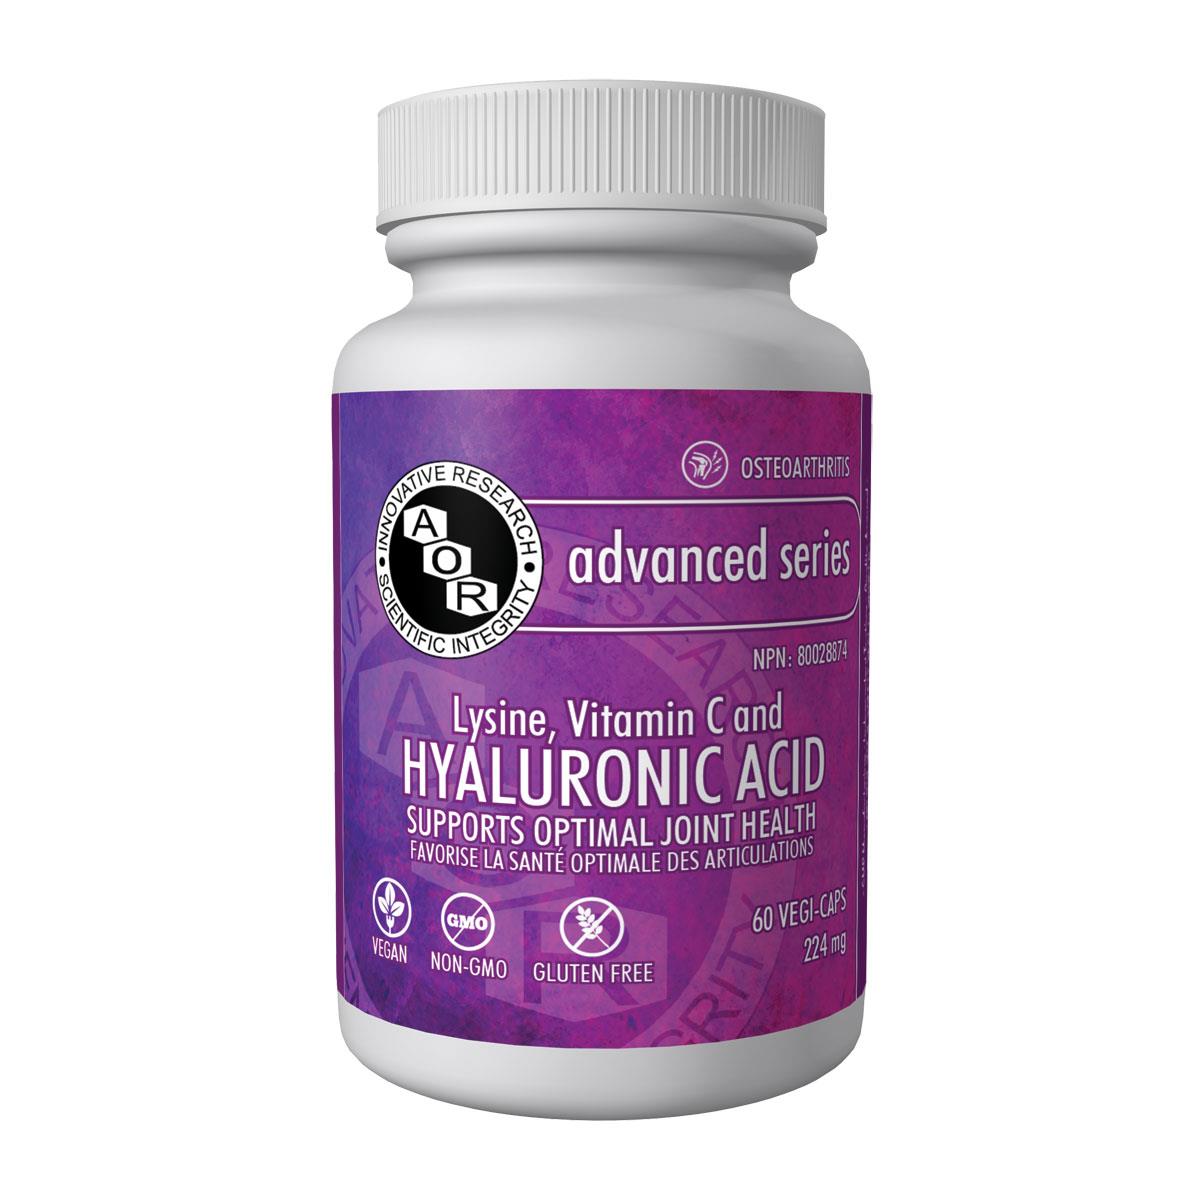 AOR Lysine / Vitamin C / Hyaluronic Acid 60 vegetarian capsules